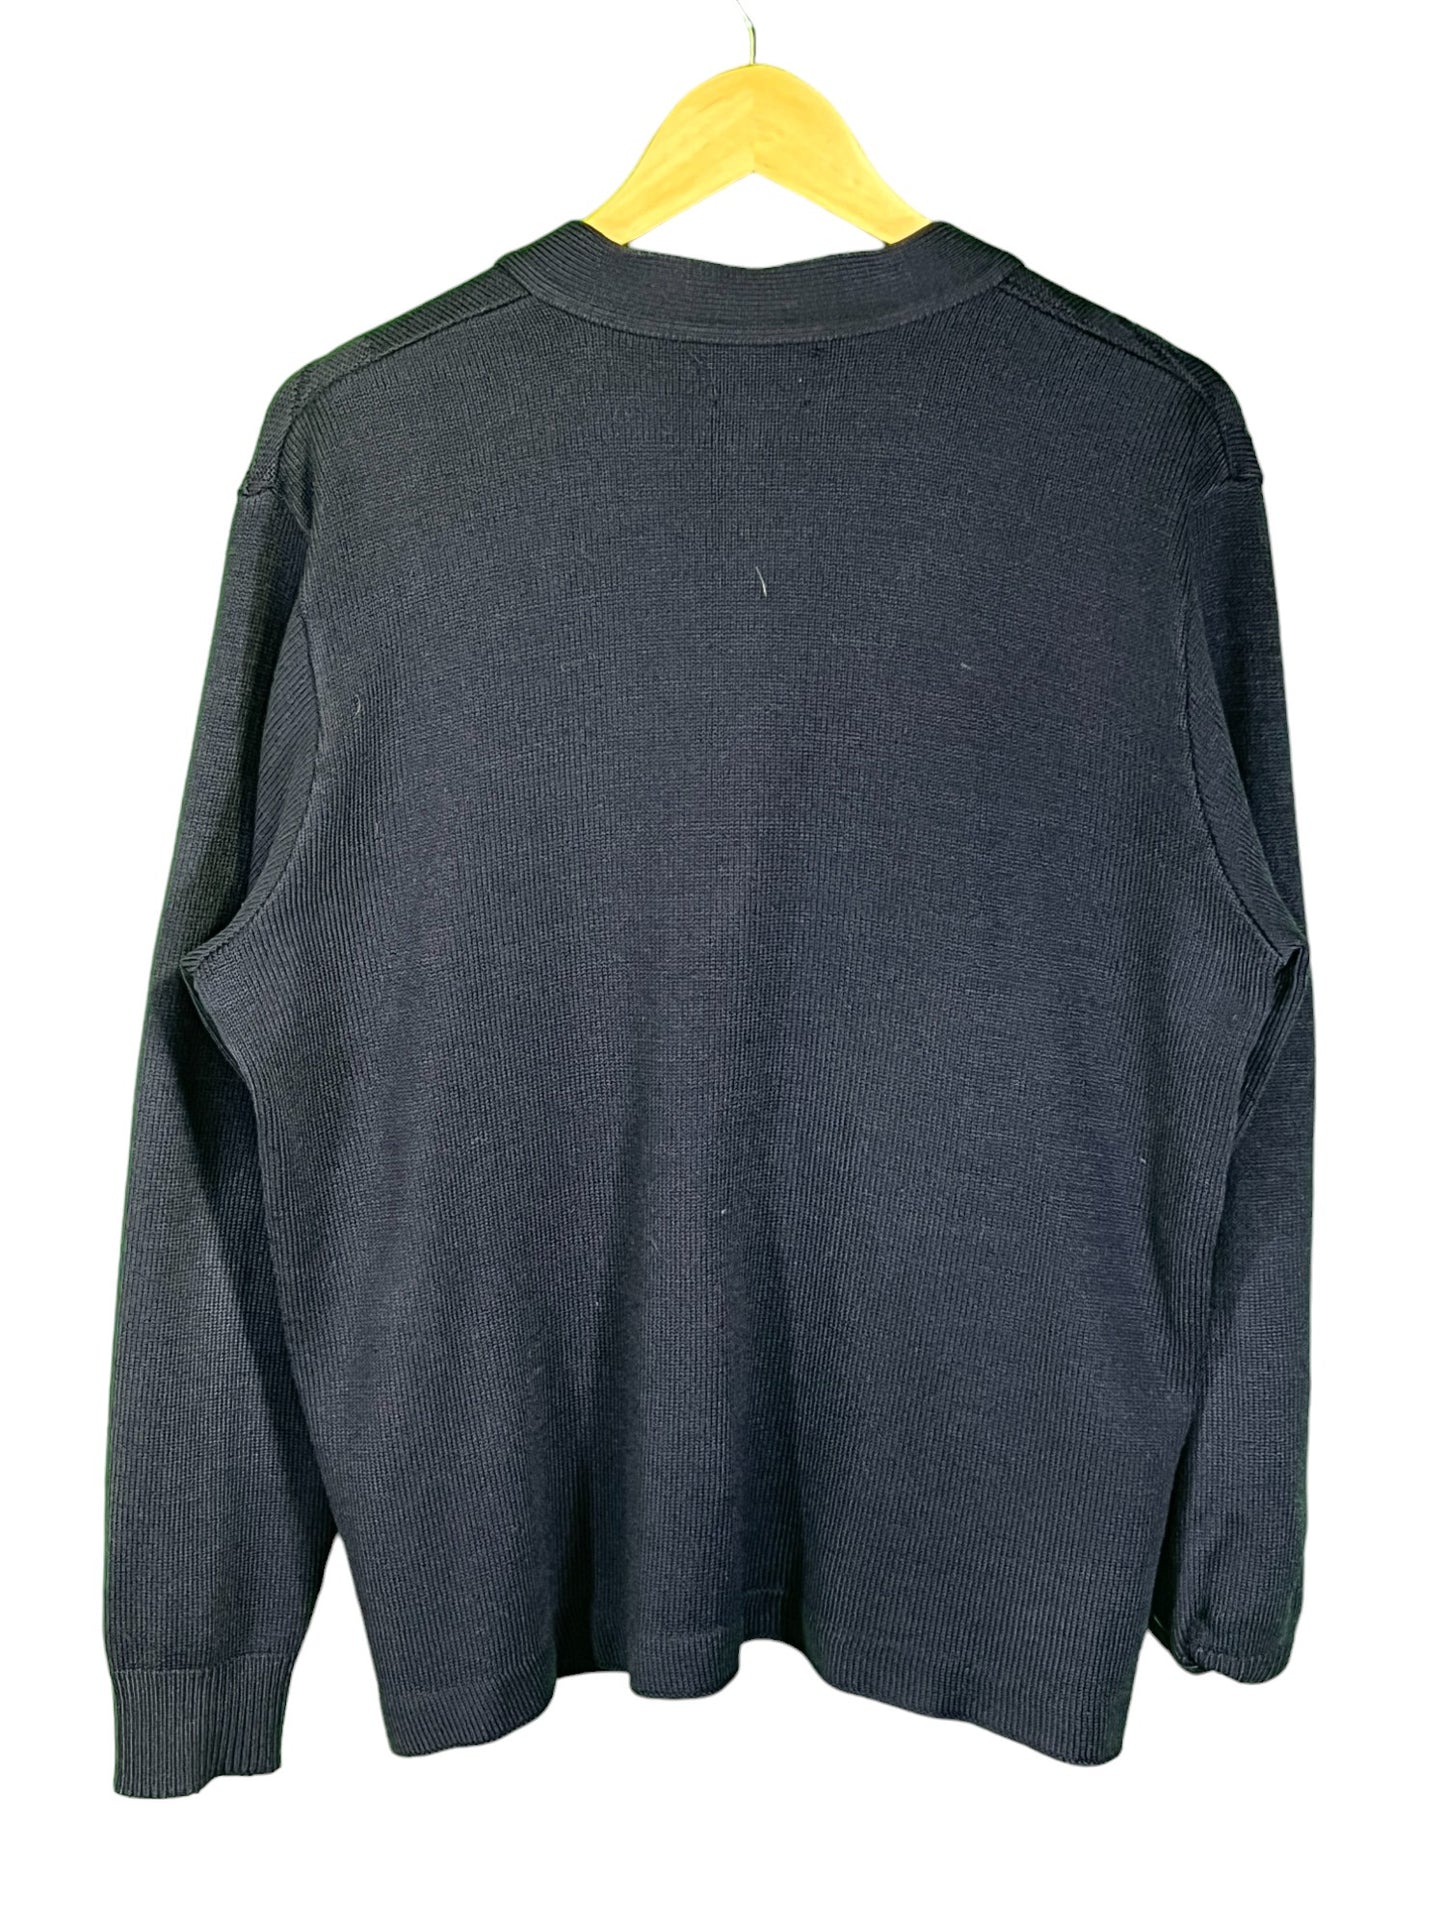 Vintage USPS Postal Approved Monogram Cardigan Sweater Size Large